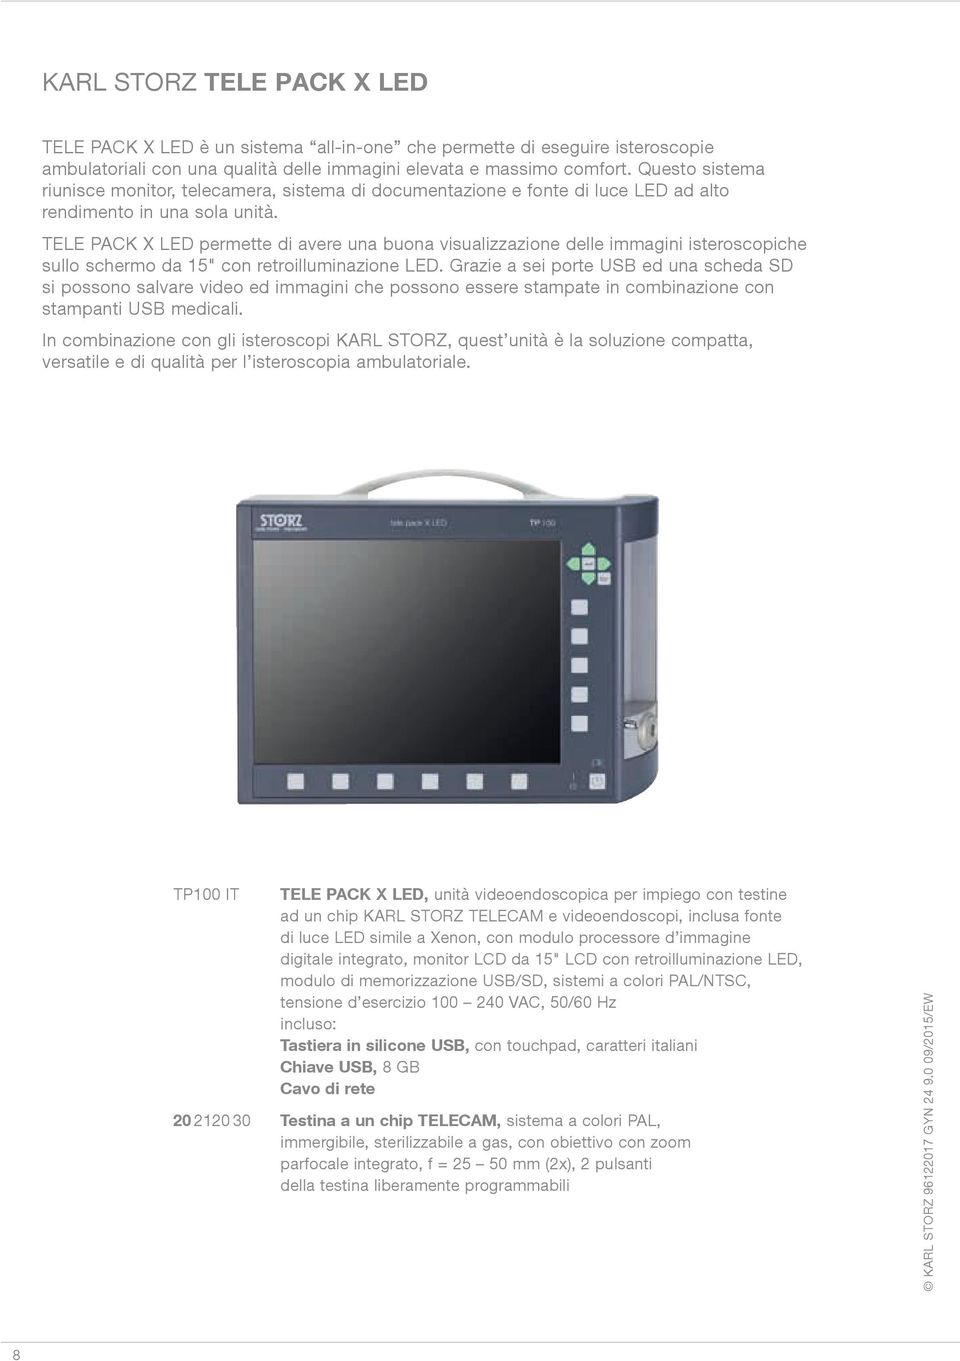 TELE PACK X LED permette di avere una buona visualizzazione delle immagini isteroscopiche sullo schermo da 15" con retroilluminazione LED.